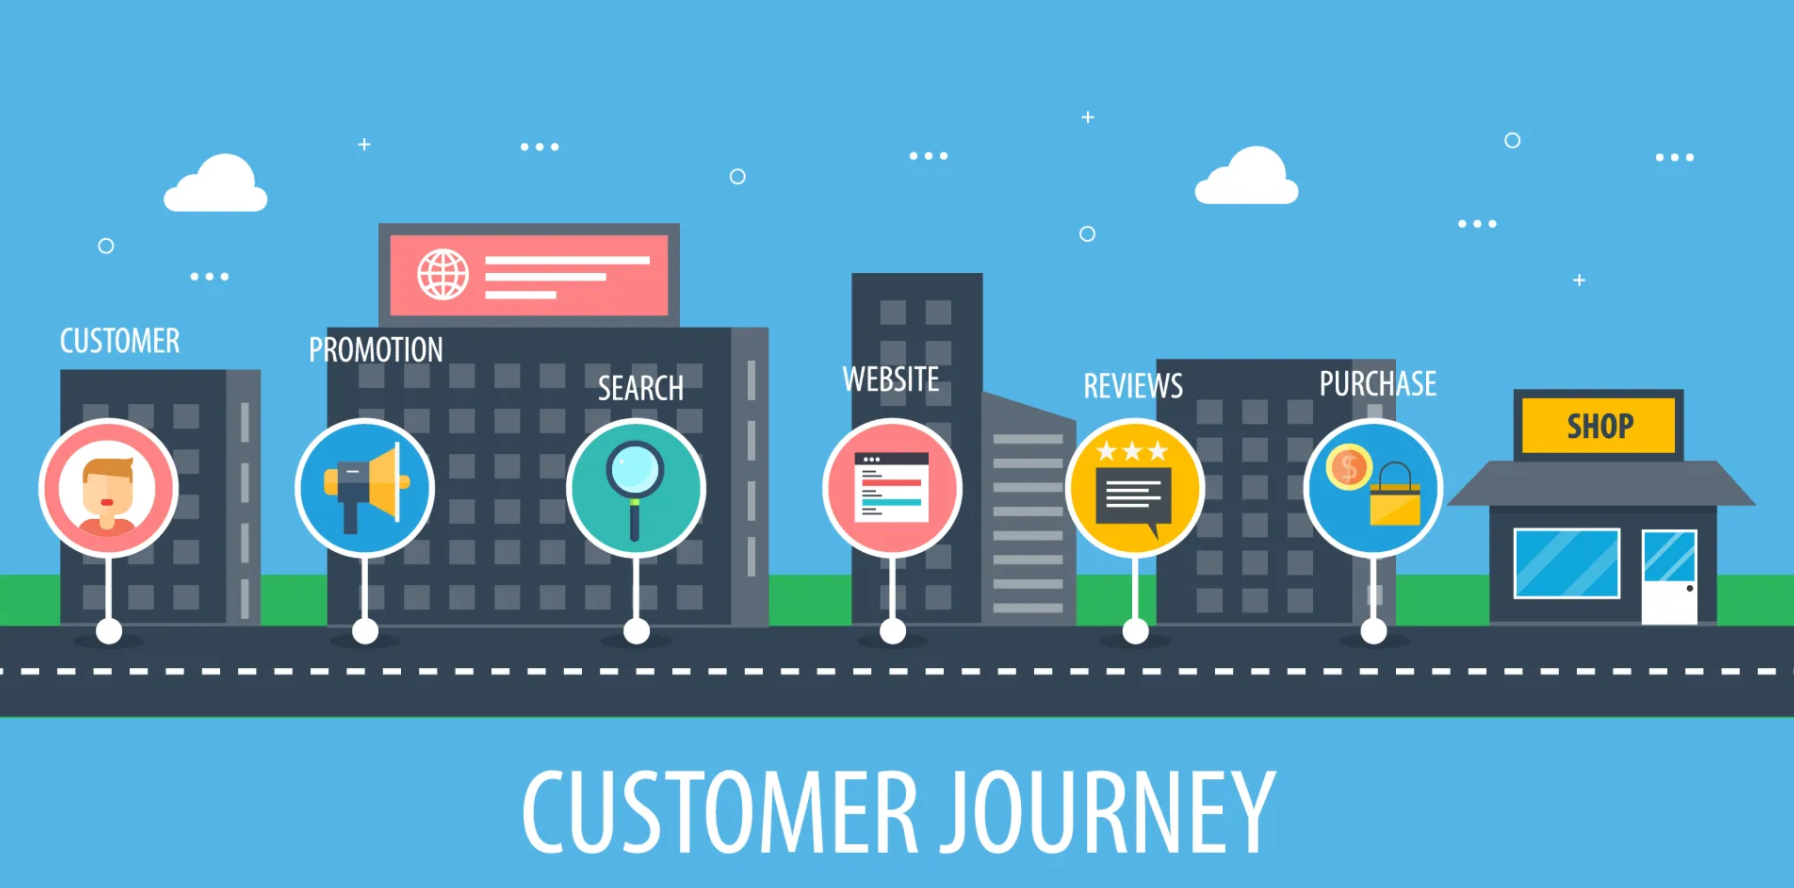 Customer Journey là gì